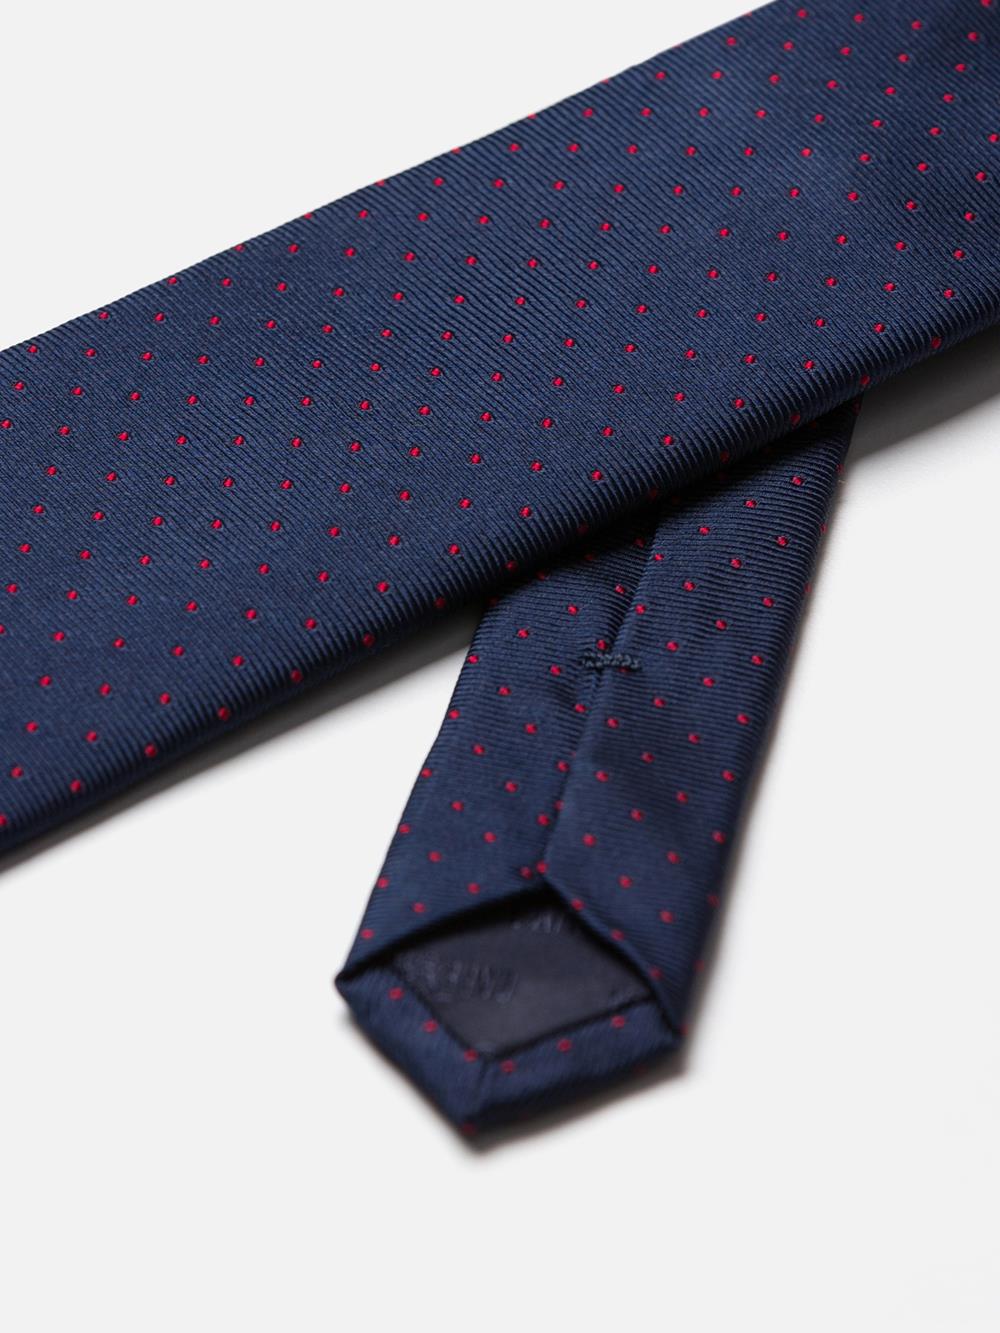 Krawatte aus Seiden-Rips mit roten Punkten